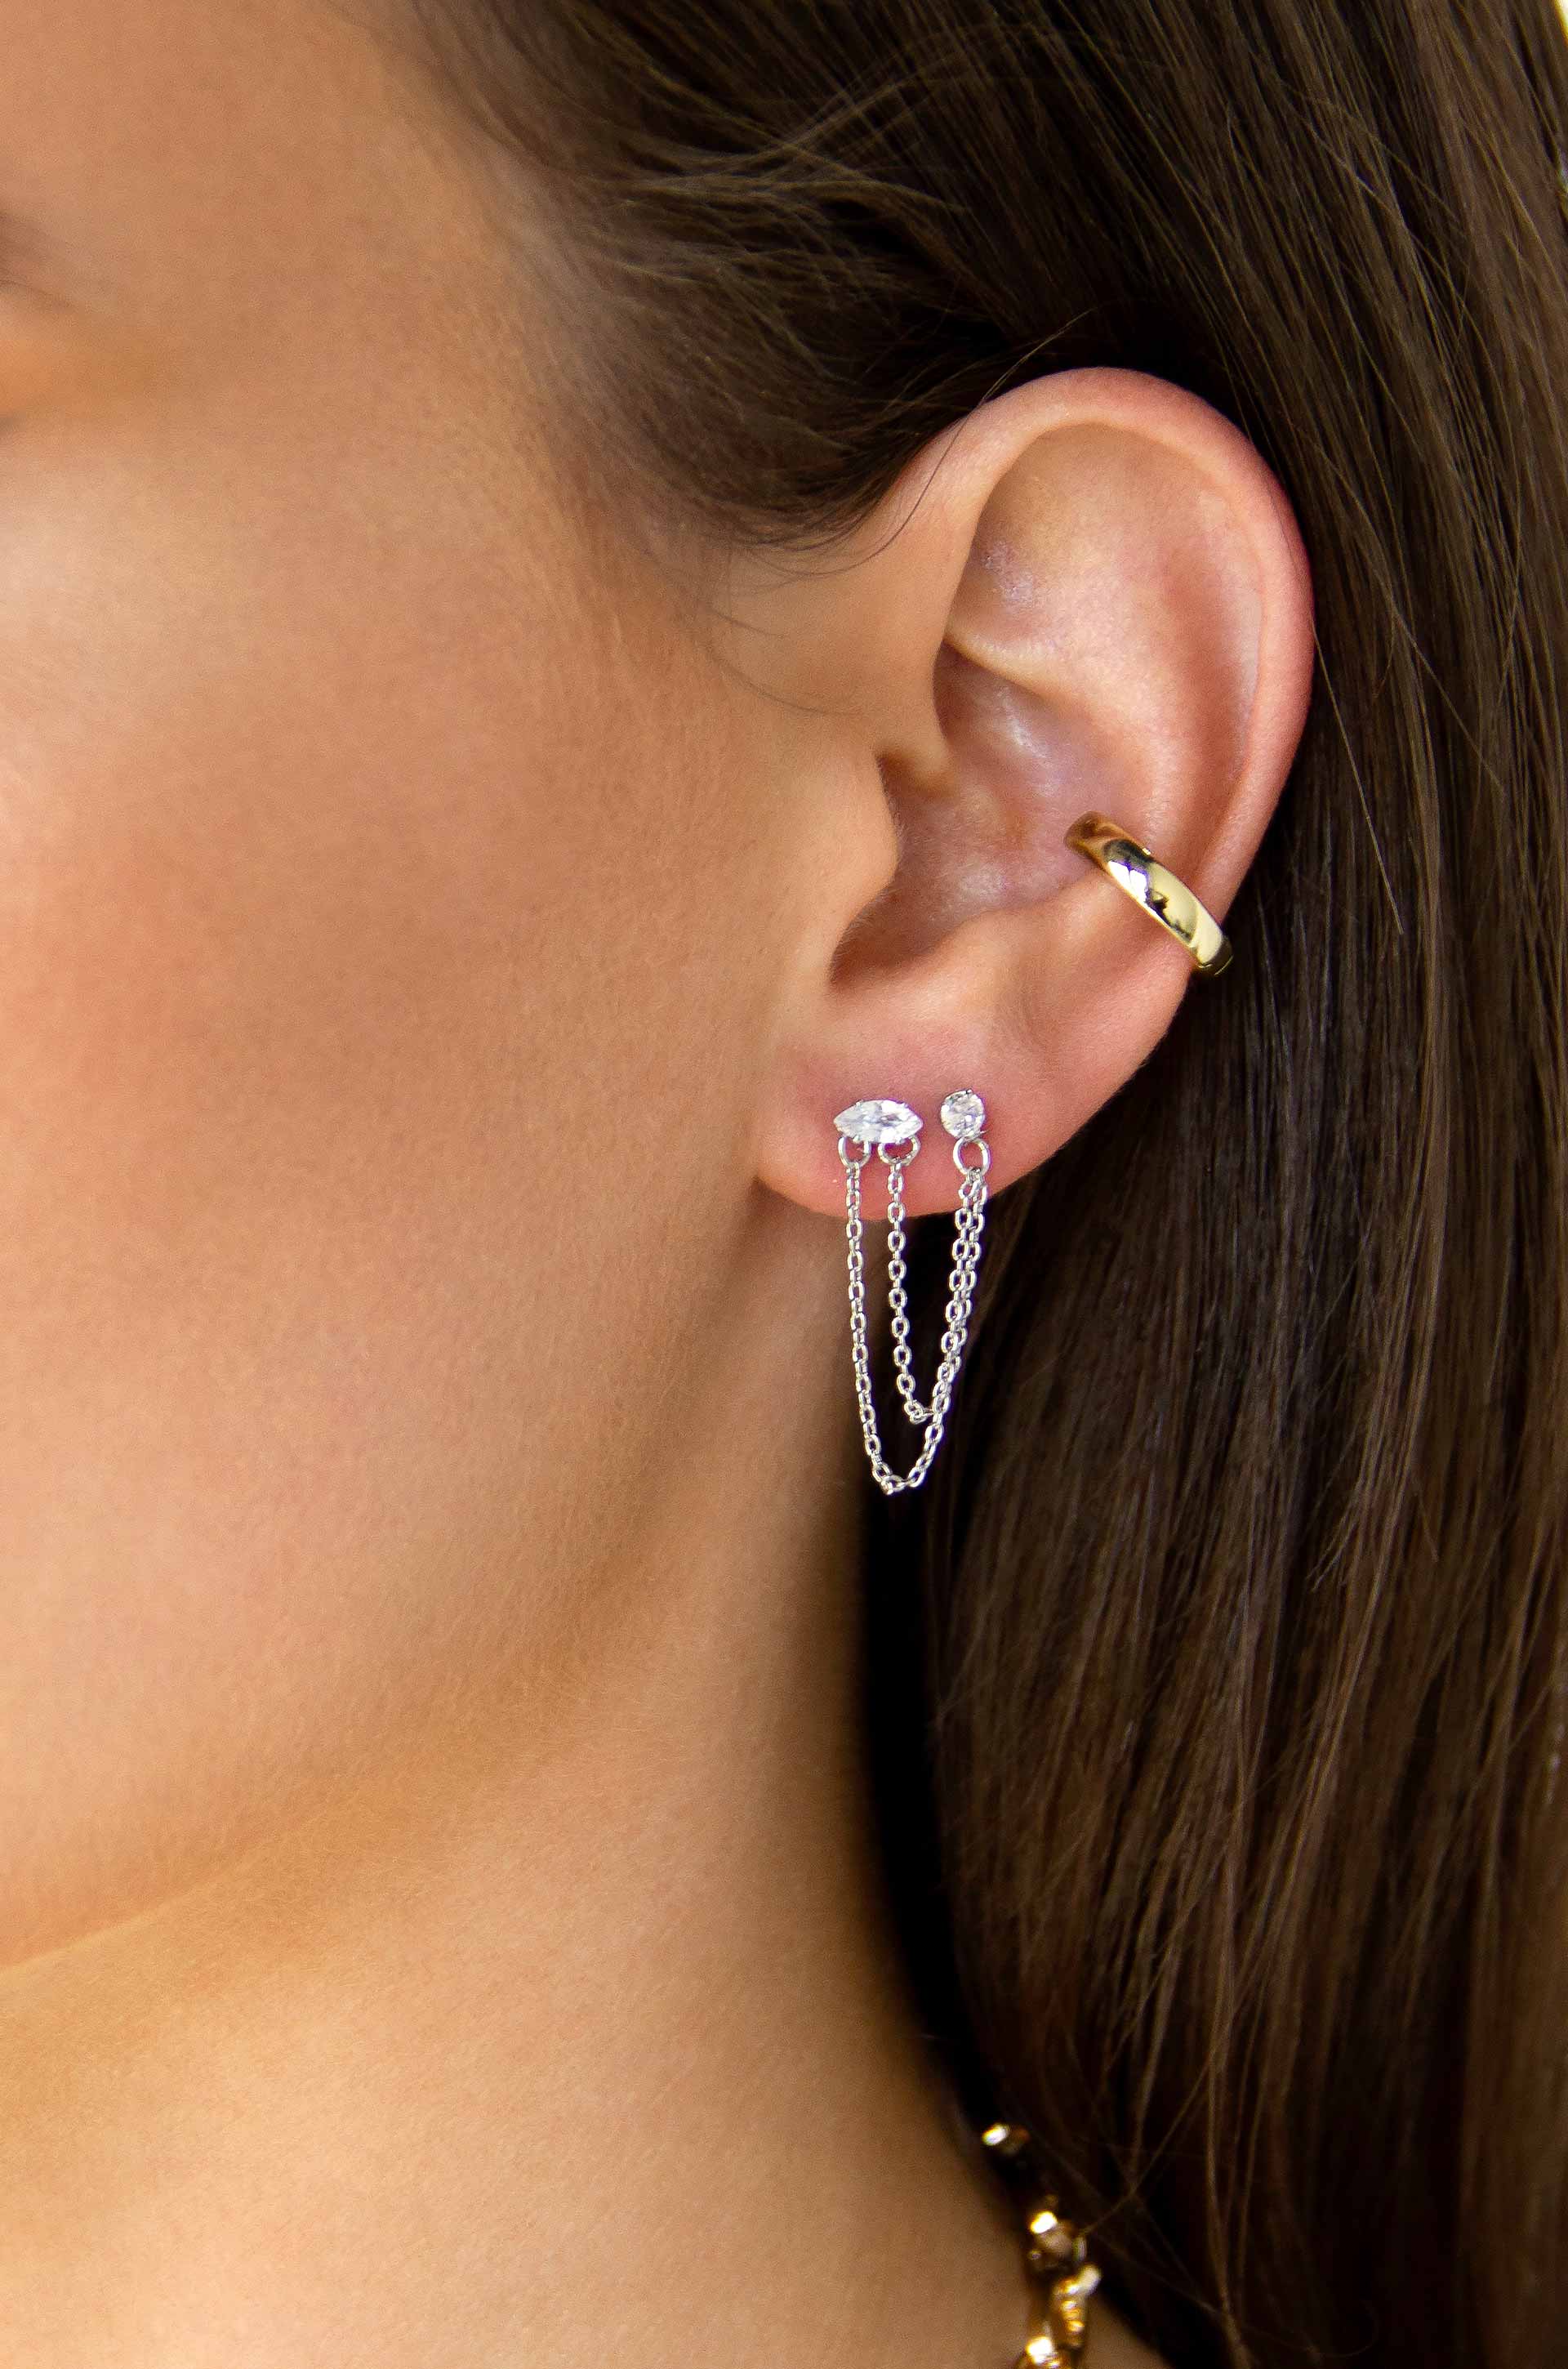 gold chain model earring designs//latest model daily wear earring designs//  - YouTube